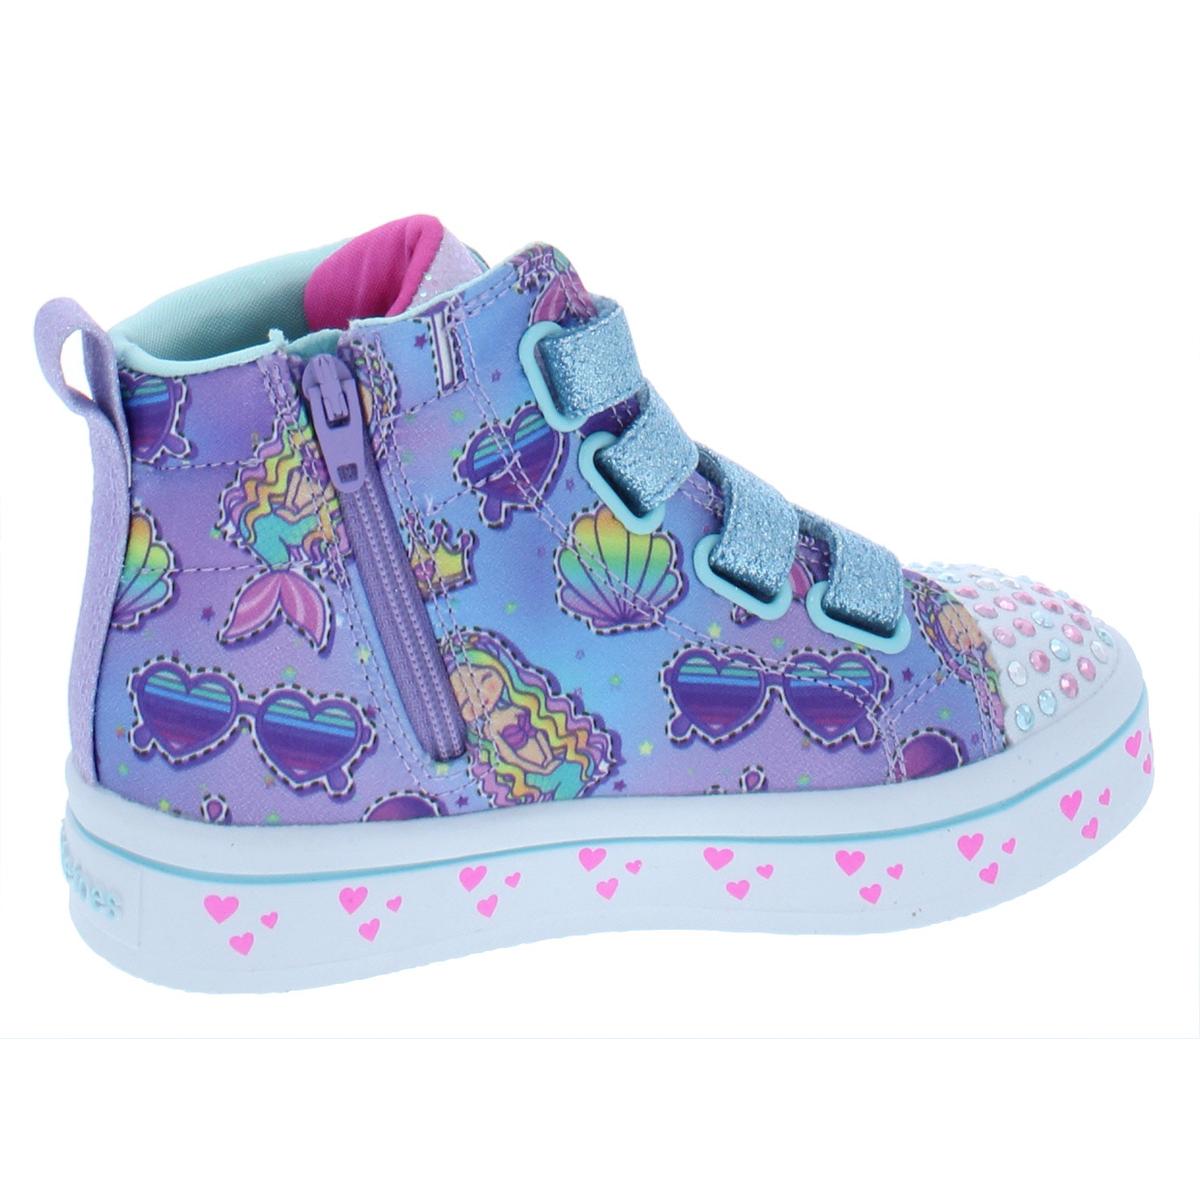 Twinkle Toes by Skechers Girls Mermaid Gems Purple High Top Sneakers ...